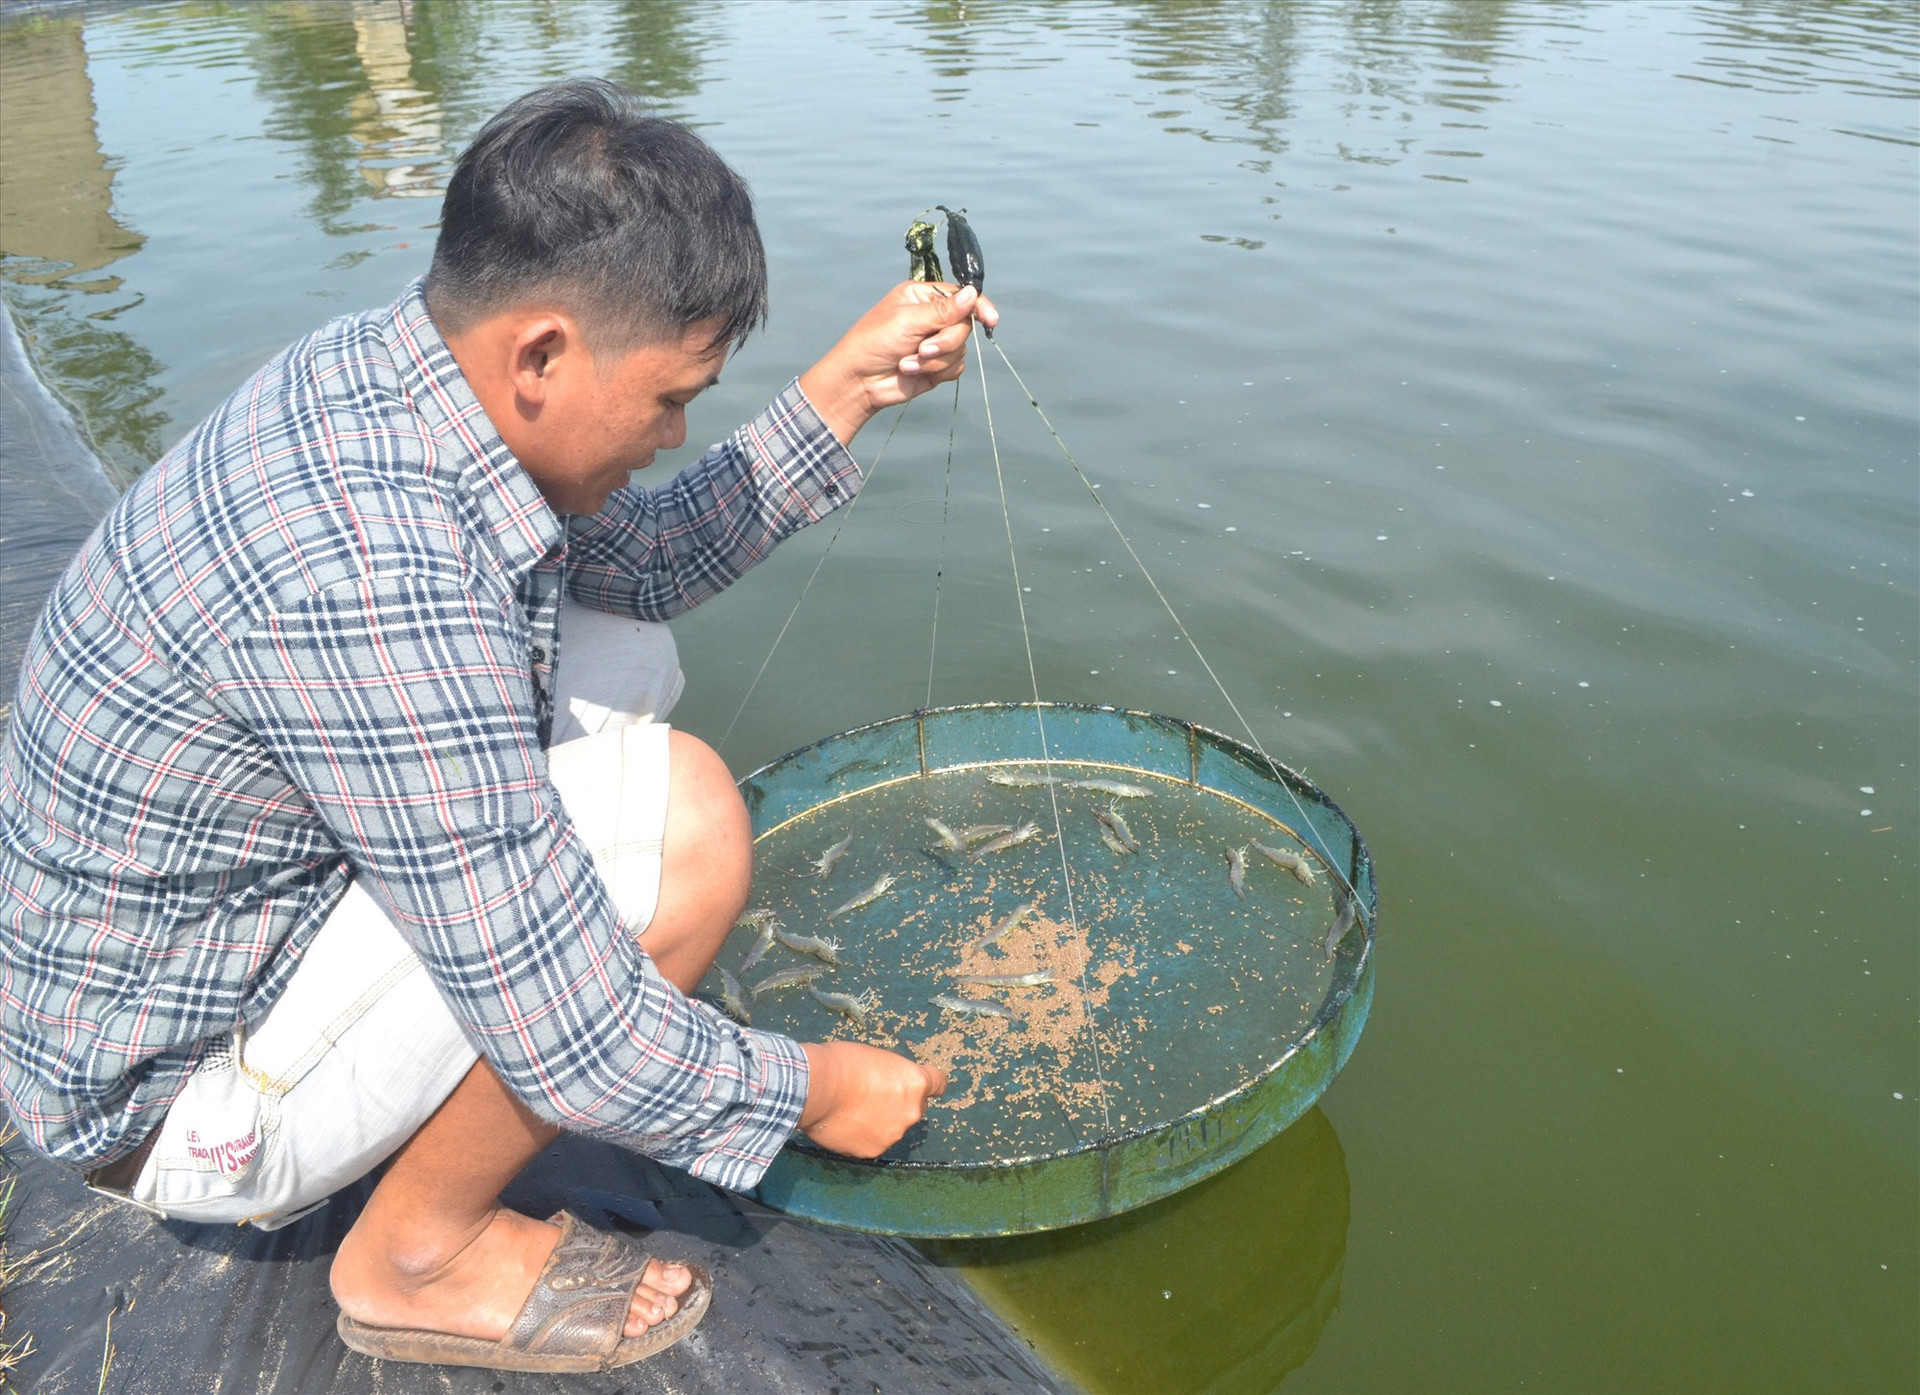 Tín dụng chính sách giúp người dân xã Tam Tiến triển khai nhiều nuôi thủy sản đạt đạt hiệu quả. Ảnh: VIỆT QUANG